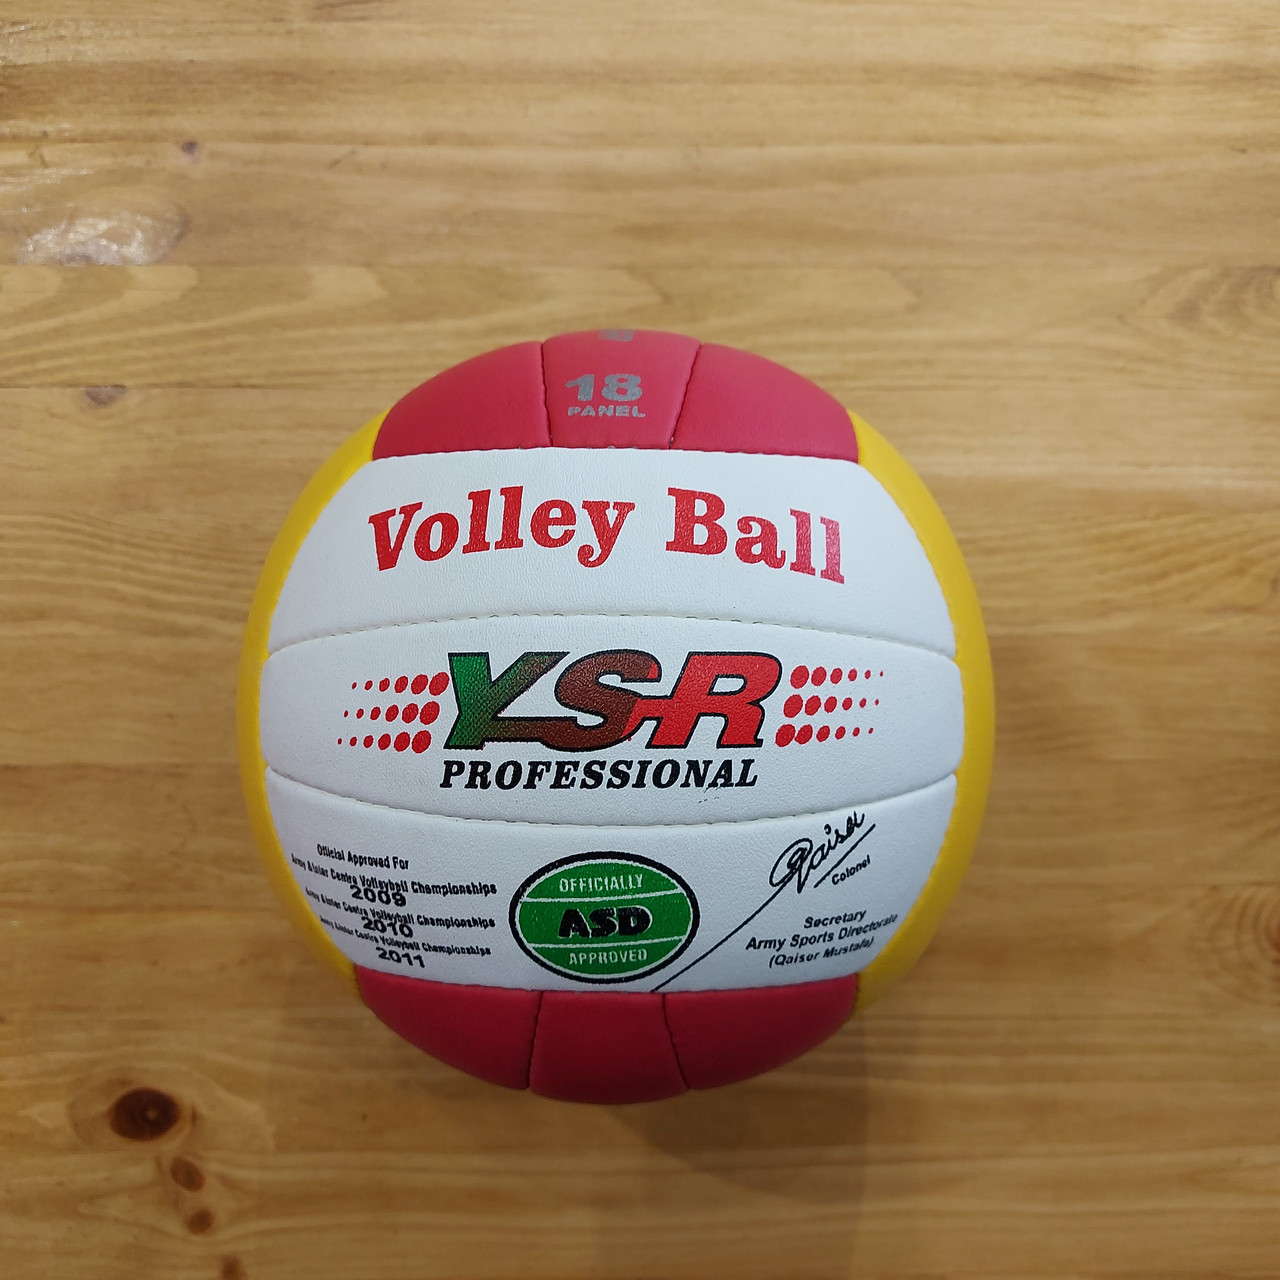 Профессиональный волейбольный мяч "YSR". Volley Ball. Производство Пакистан. Оригинал.